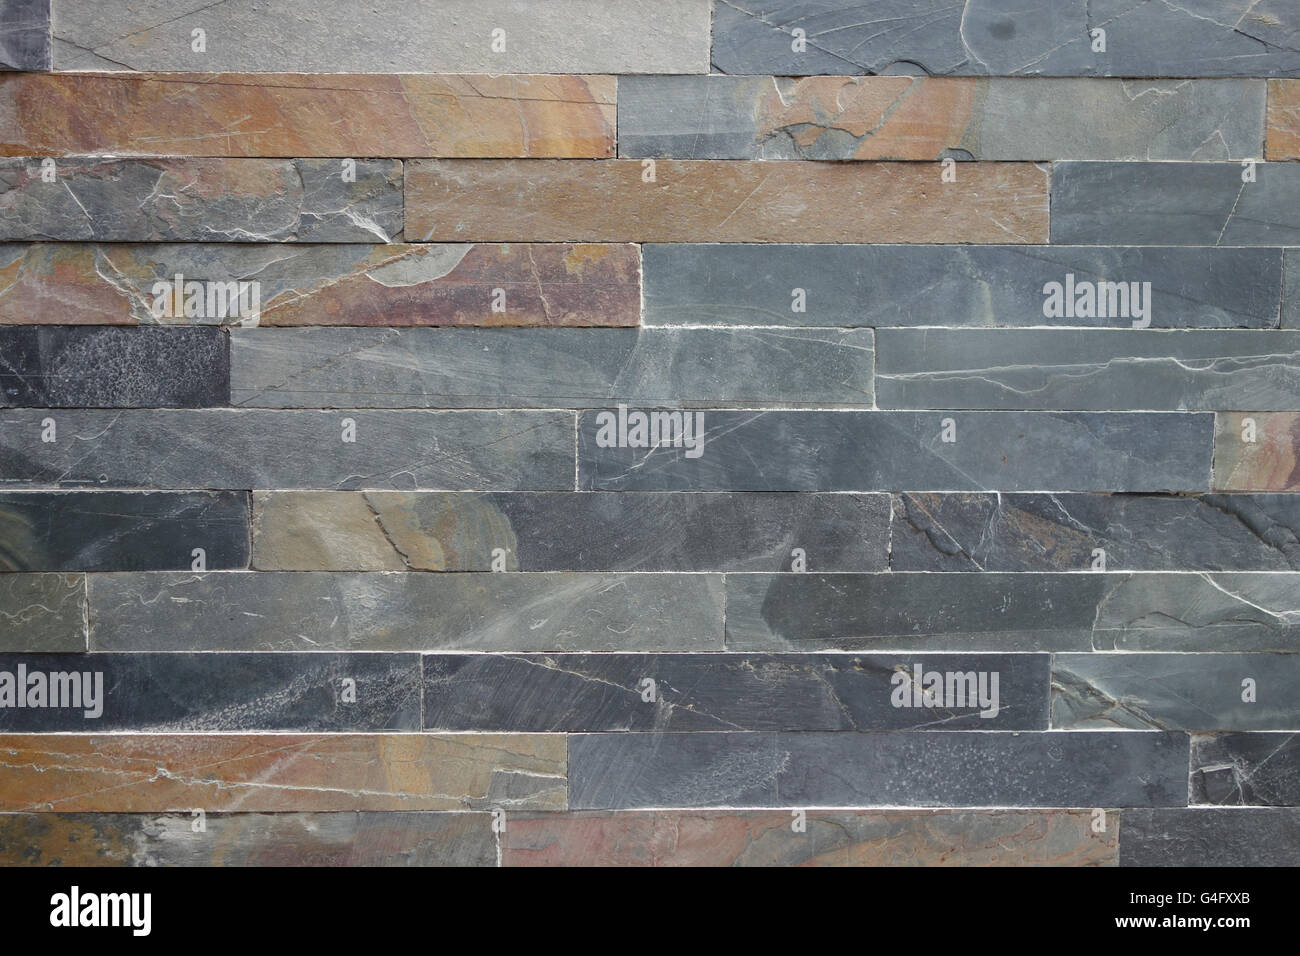 Grob strukturierte Stein Verkleidung Fliesenwand in grau und Ocker Farben Hintergrund Stockfoto